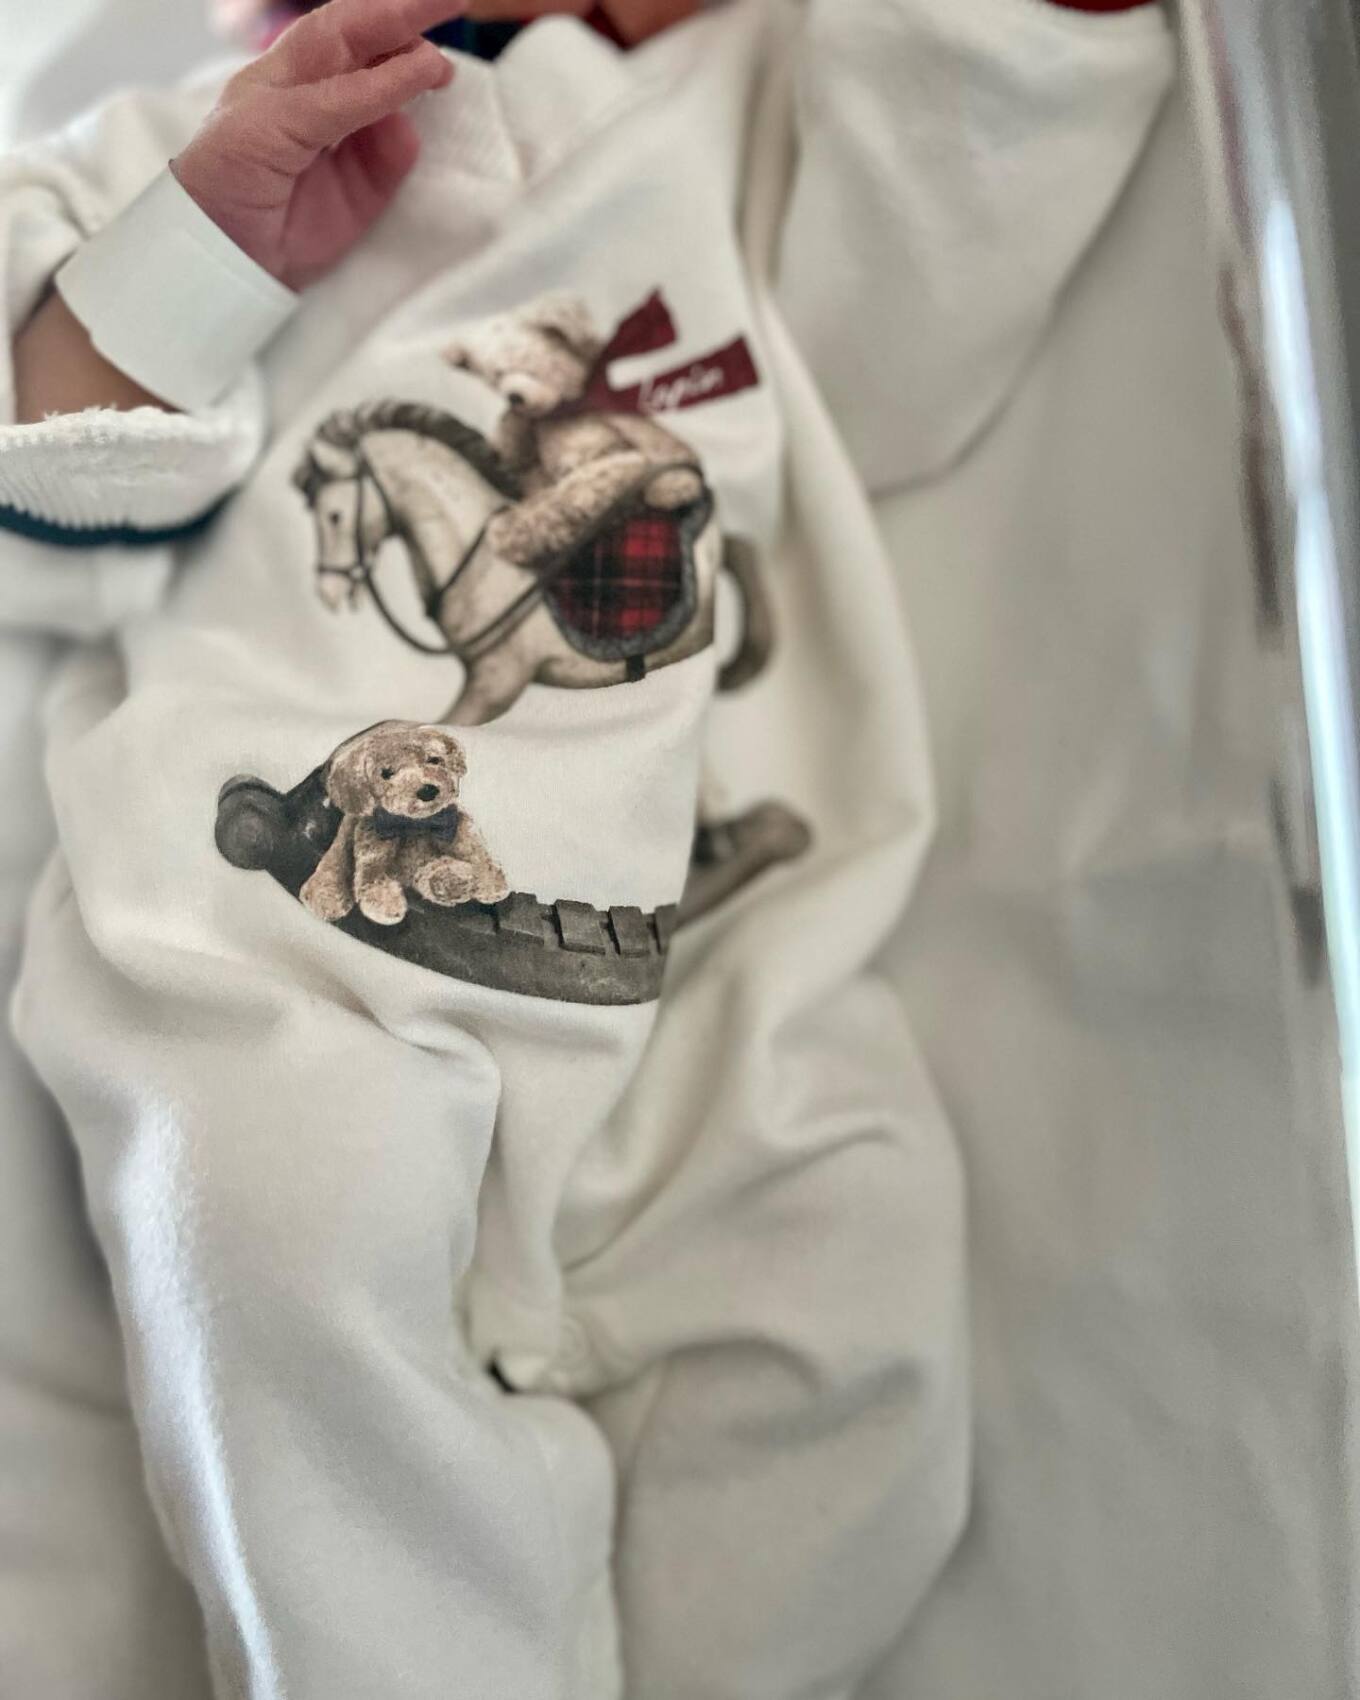 Γιούλικα Σκαφιδά: Οι πρώτες φωτογραφίες με το νεογέννητο παιδί της